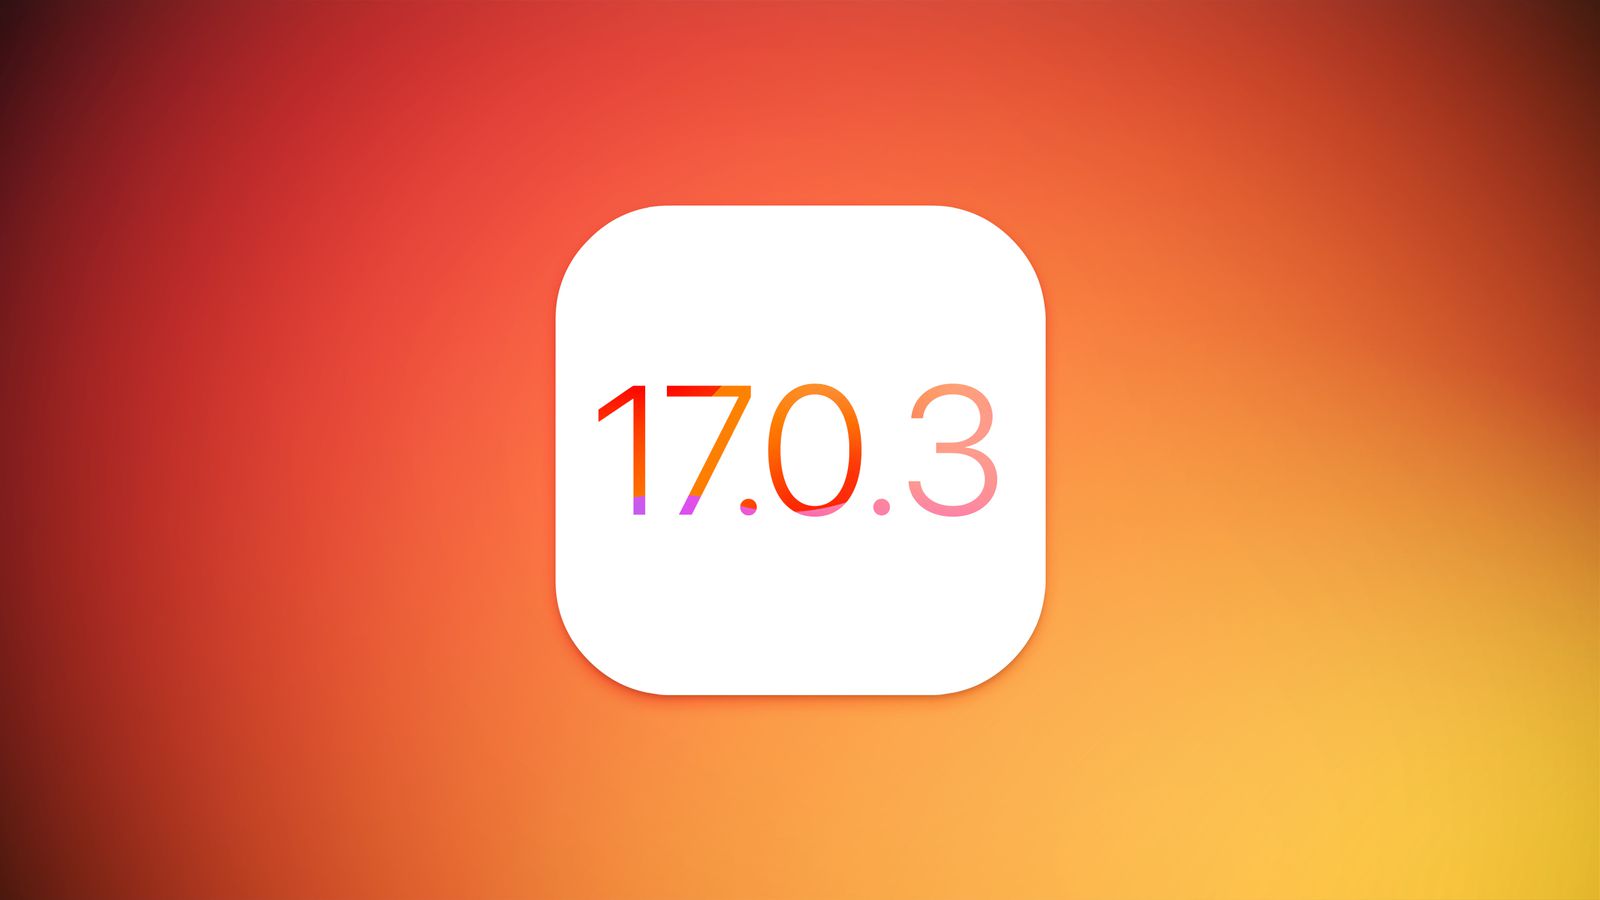 Apple z aktualizacją iOS 17.0.3 naprawiło problem przegrzewania się iPhone'a 15 Pro i iPhone'a 15 Pro Max